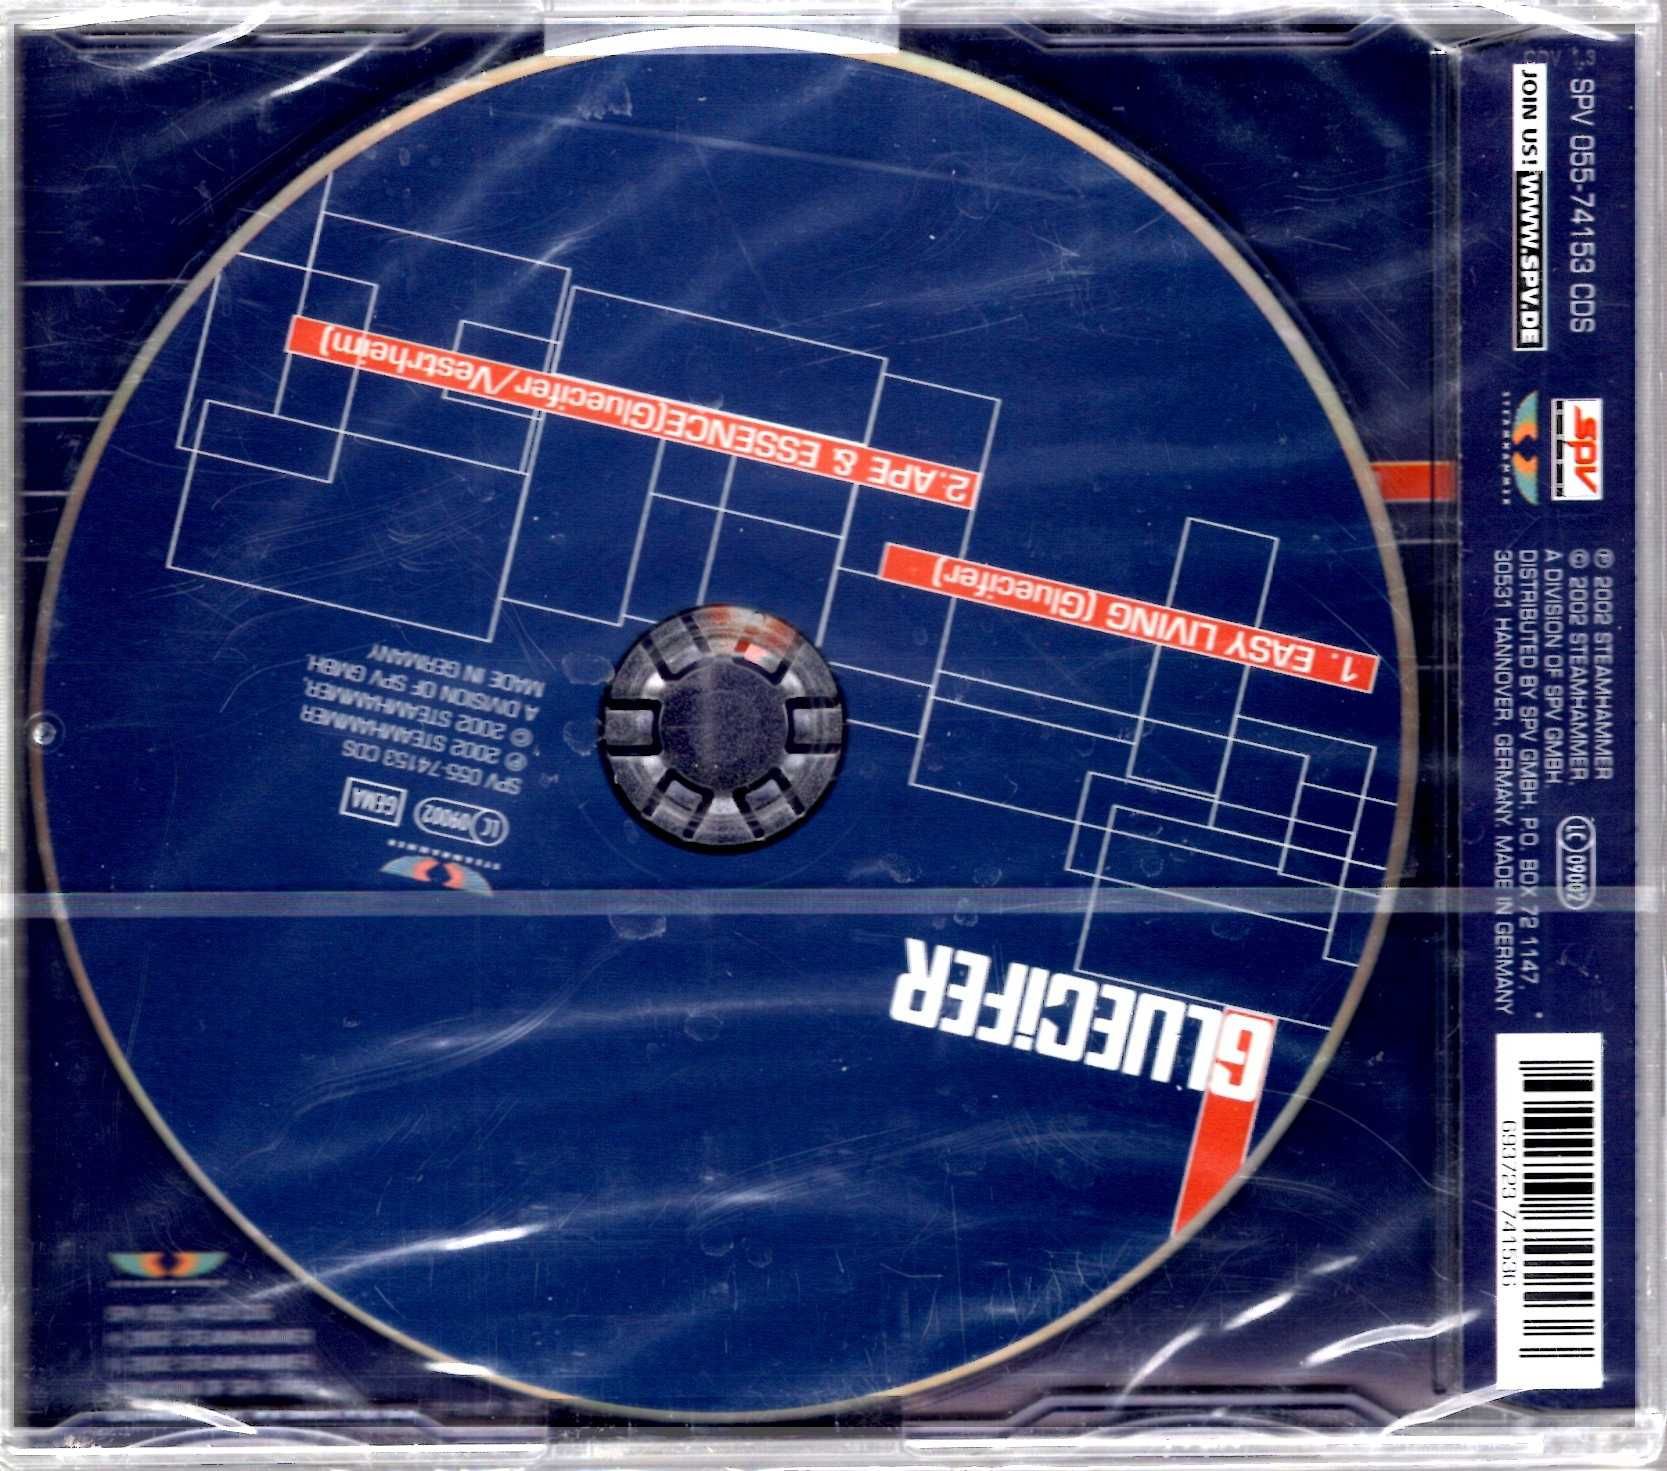 Gluecifer - Easy Living (CD)